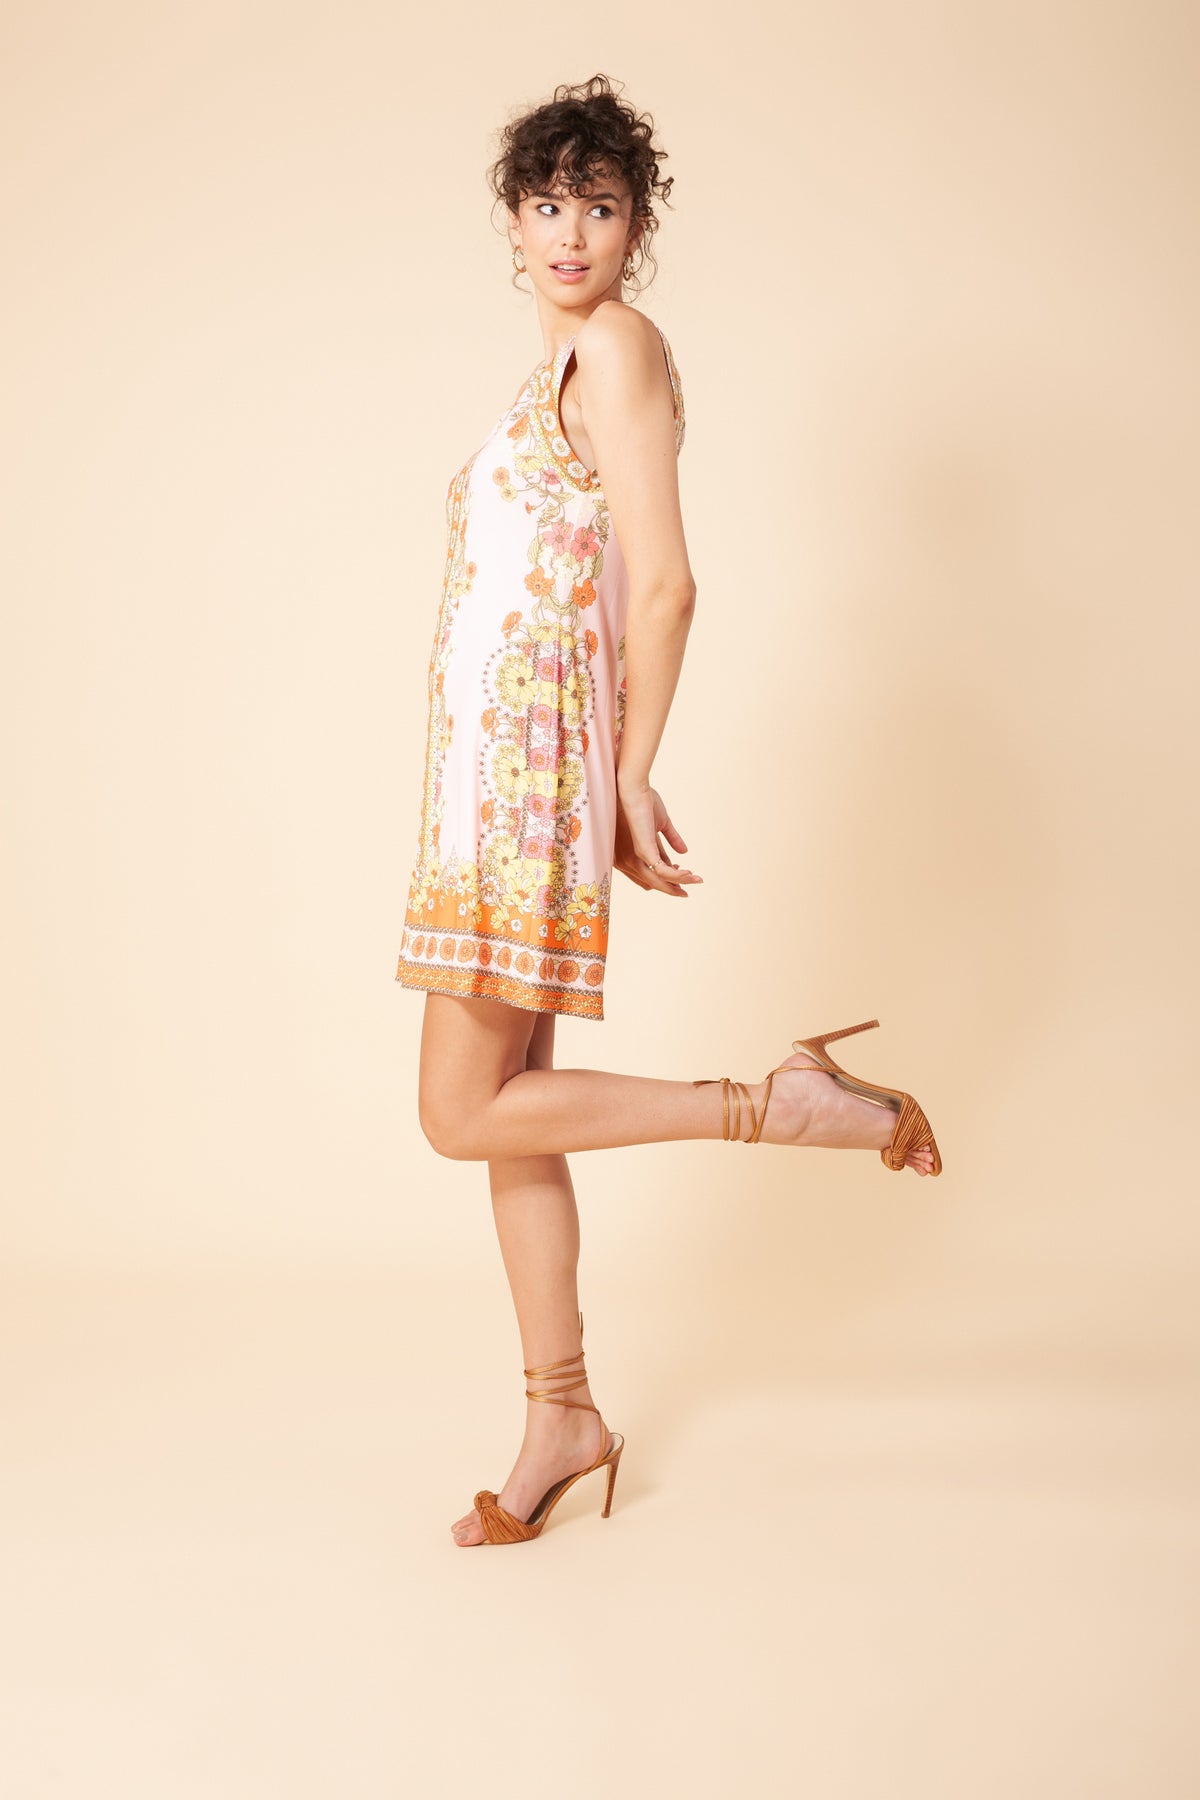 Hale Bob Amyie Matte Jersey Sleeveless Dress - Size L Available